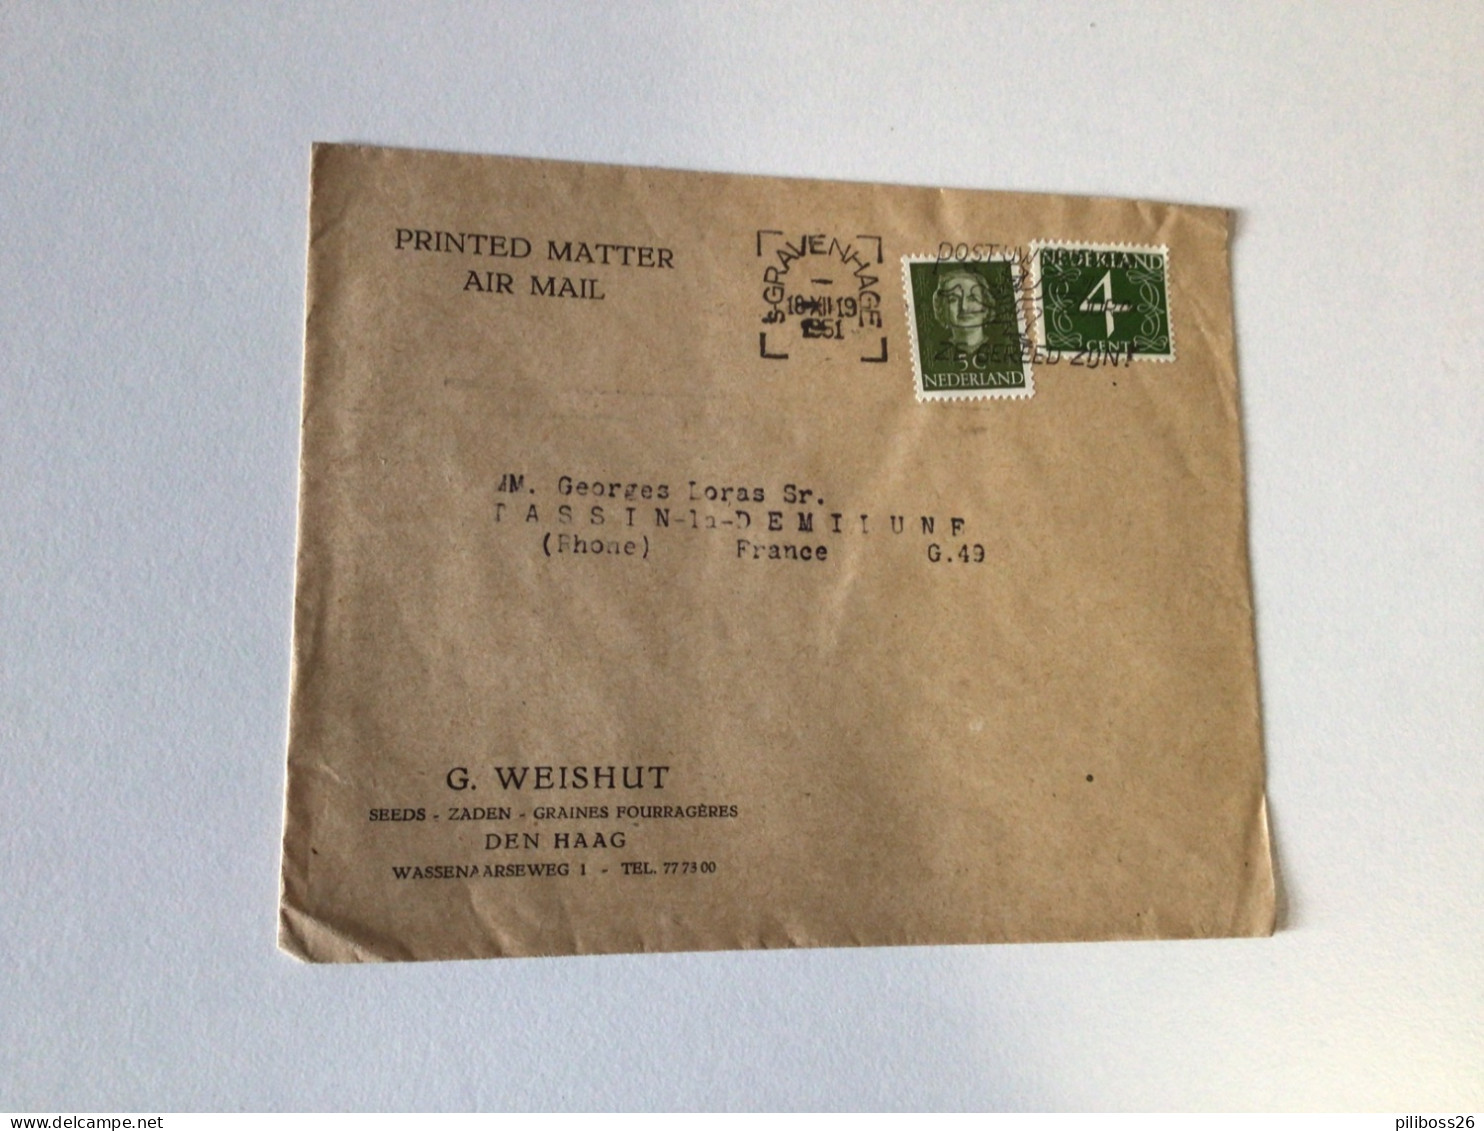 Lot de lettres des Pays Bas vers la France , de 1930 à 1951 , perforé , distributeur, différentes valeurs d affranchisse